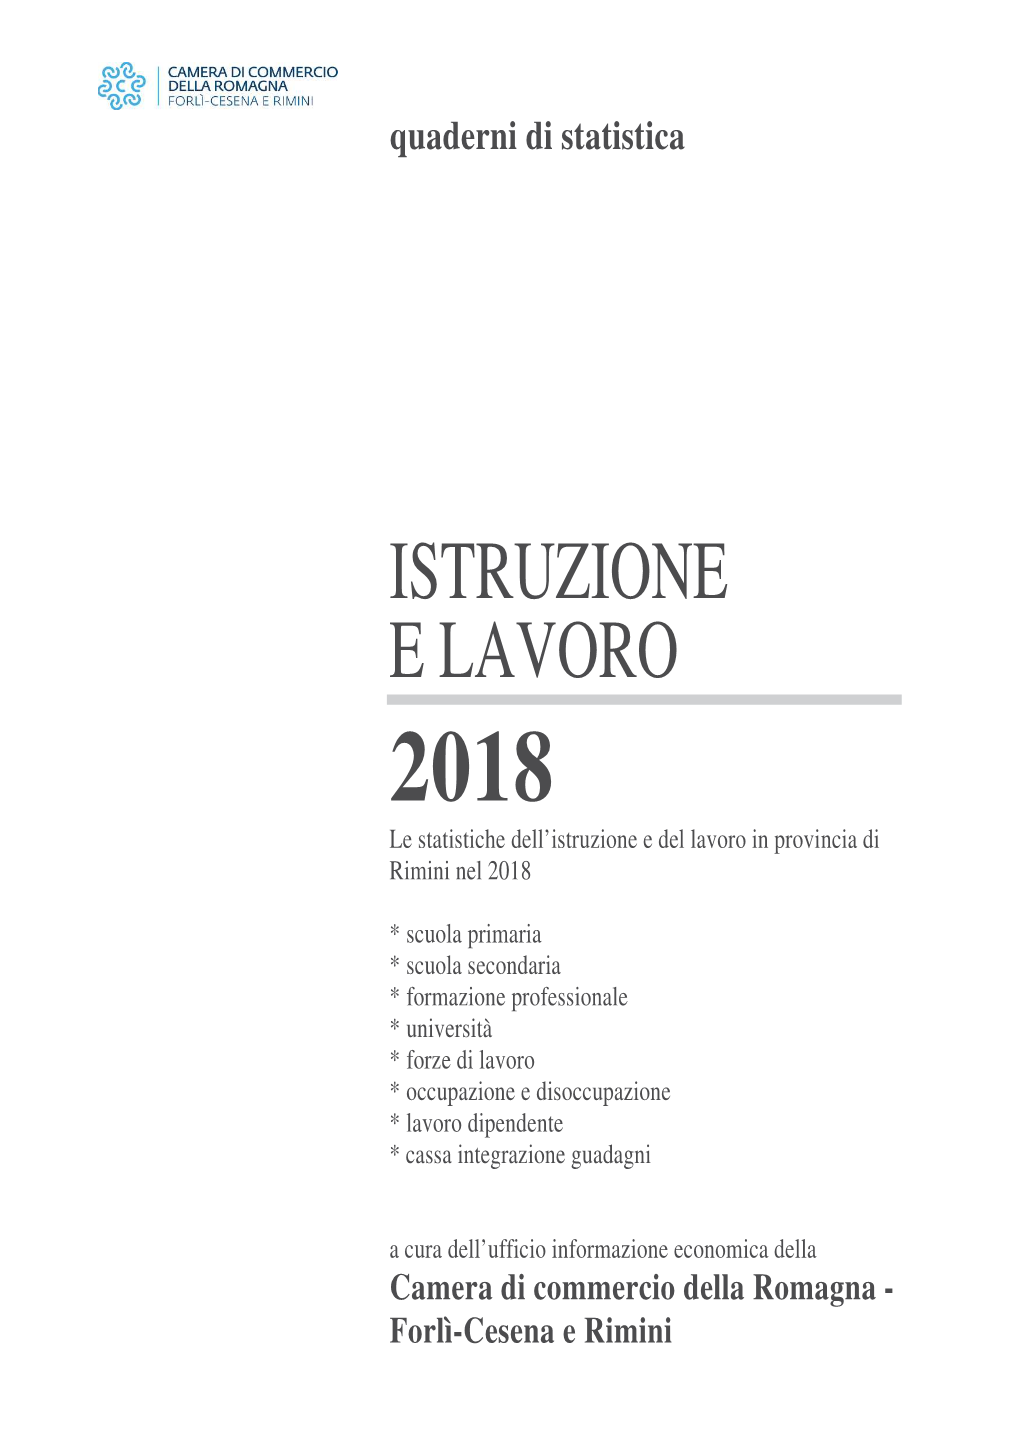 ISTRUZIONE E LAVORO 2018 Le Statistiche Dell’Istruzione E Del Lavoro in Provincia Di Rimini Nel 2018